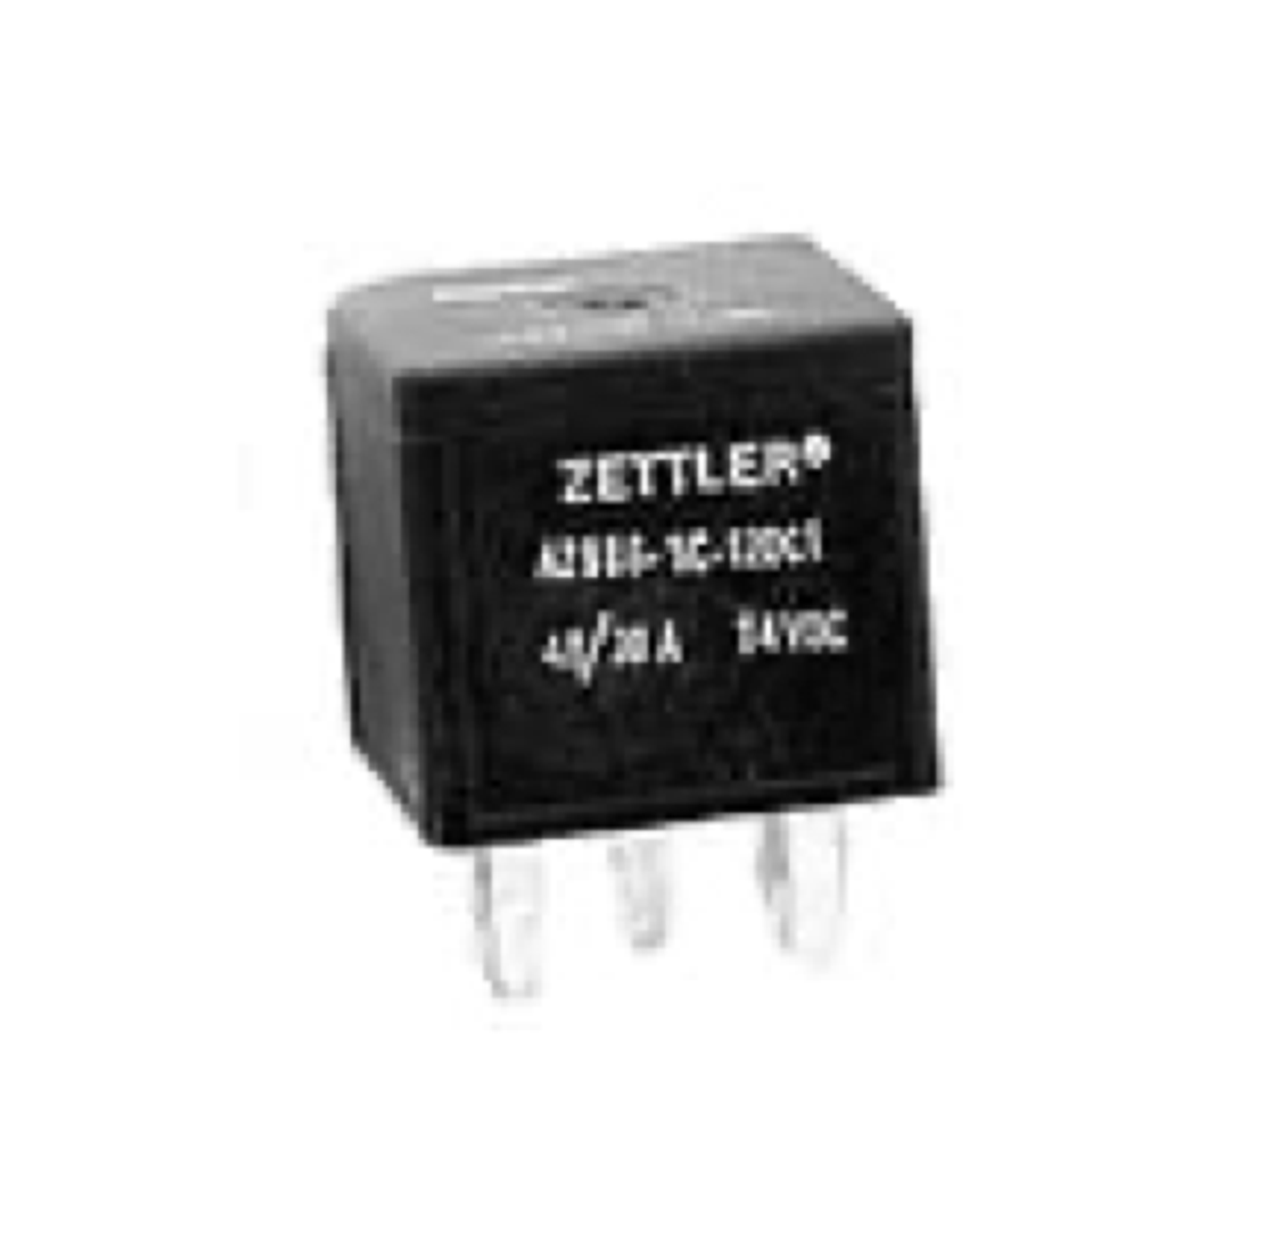 American Zettler AZ9861-1A-24DC1D3 Automotive Relay